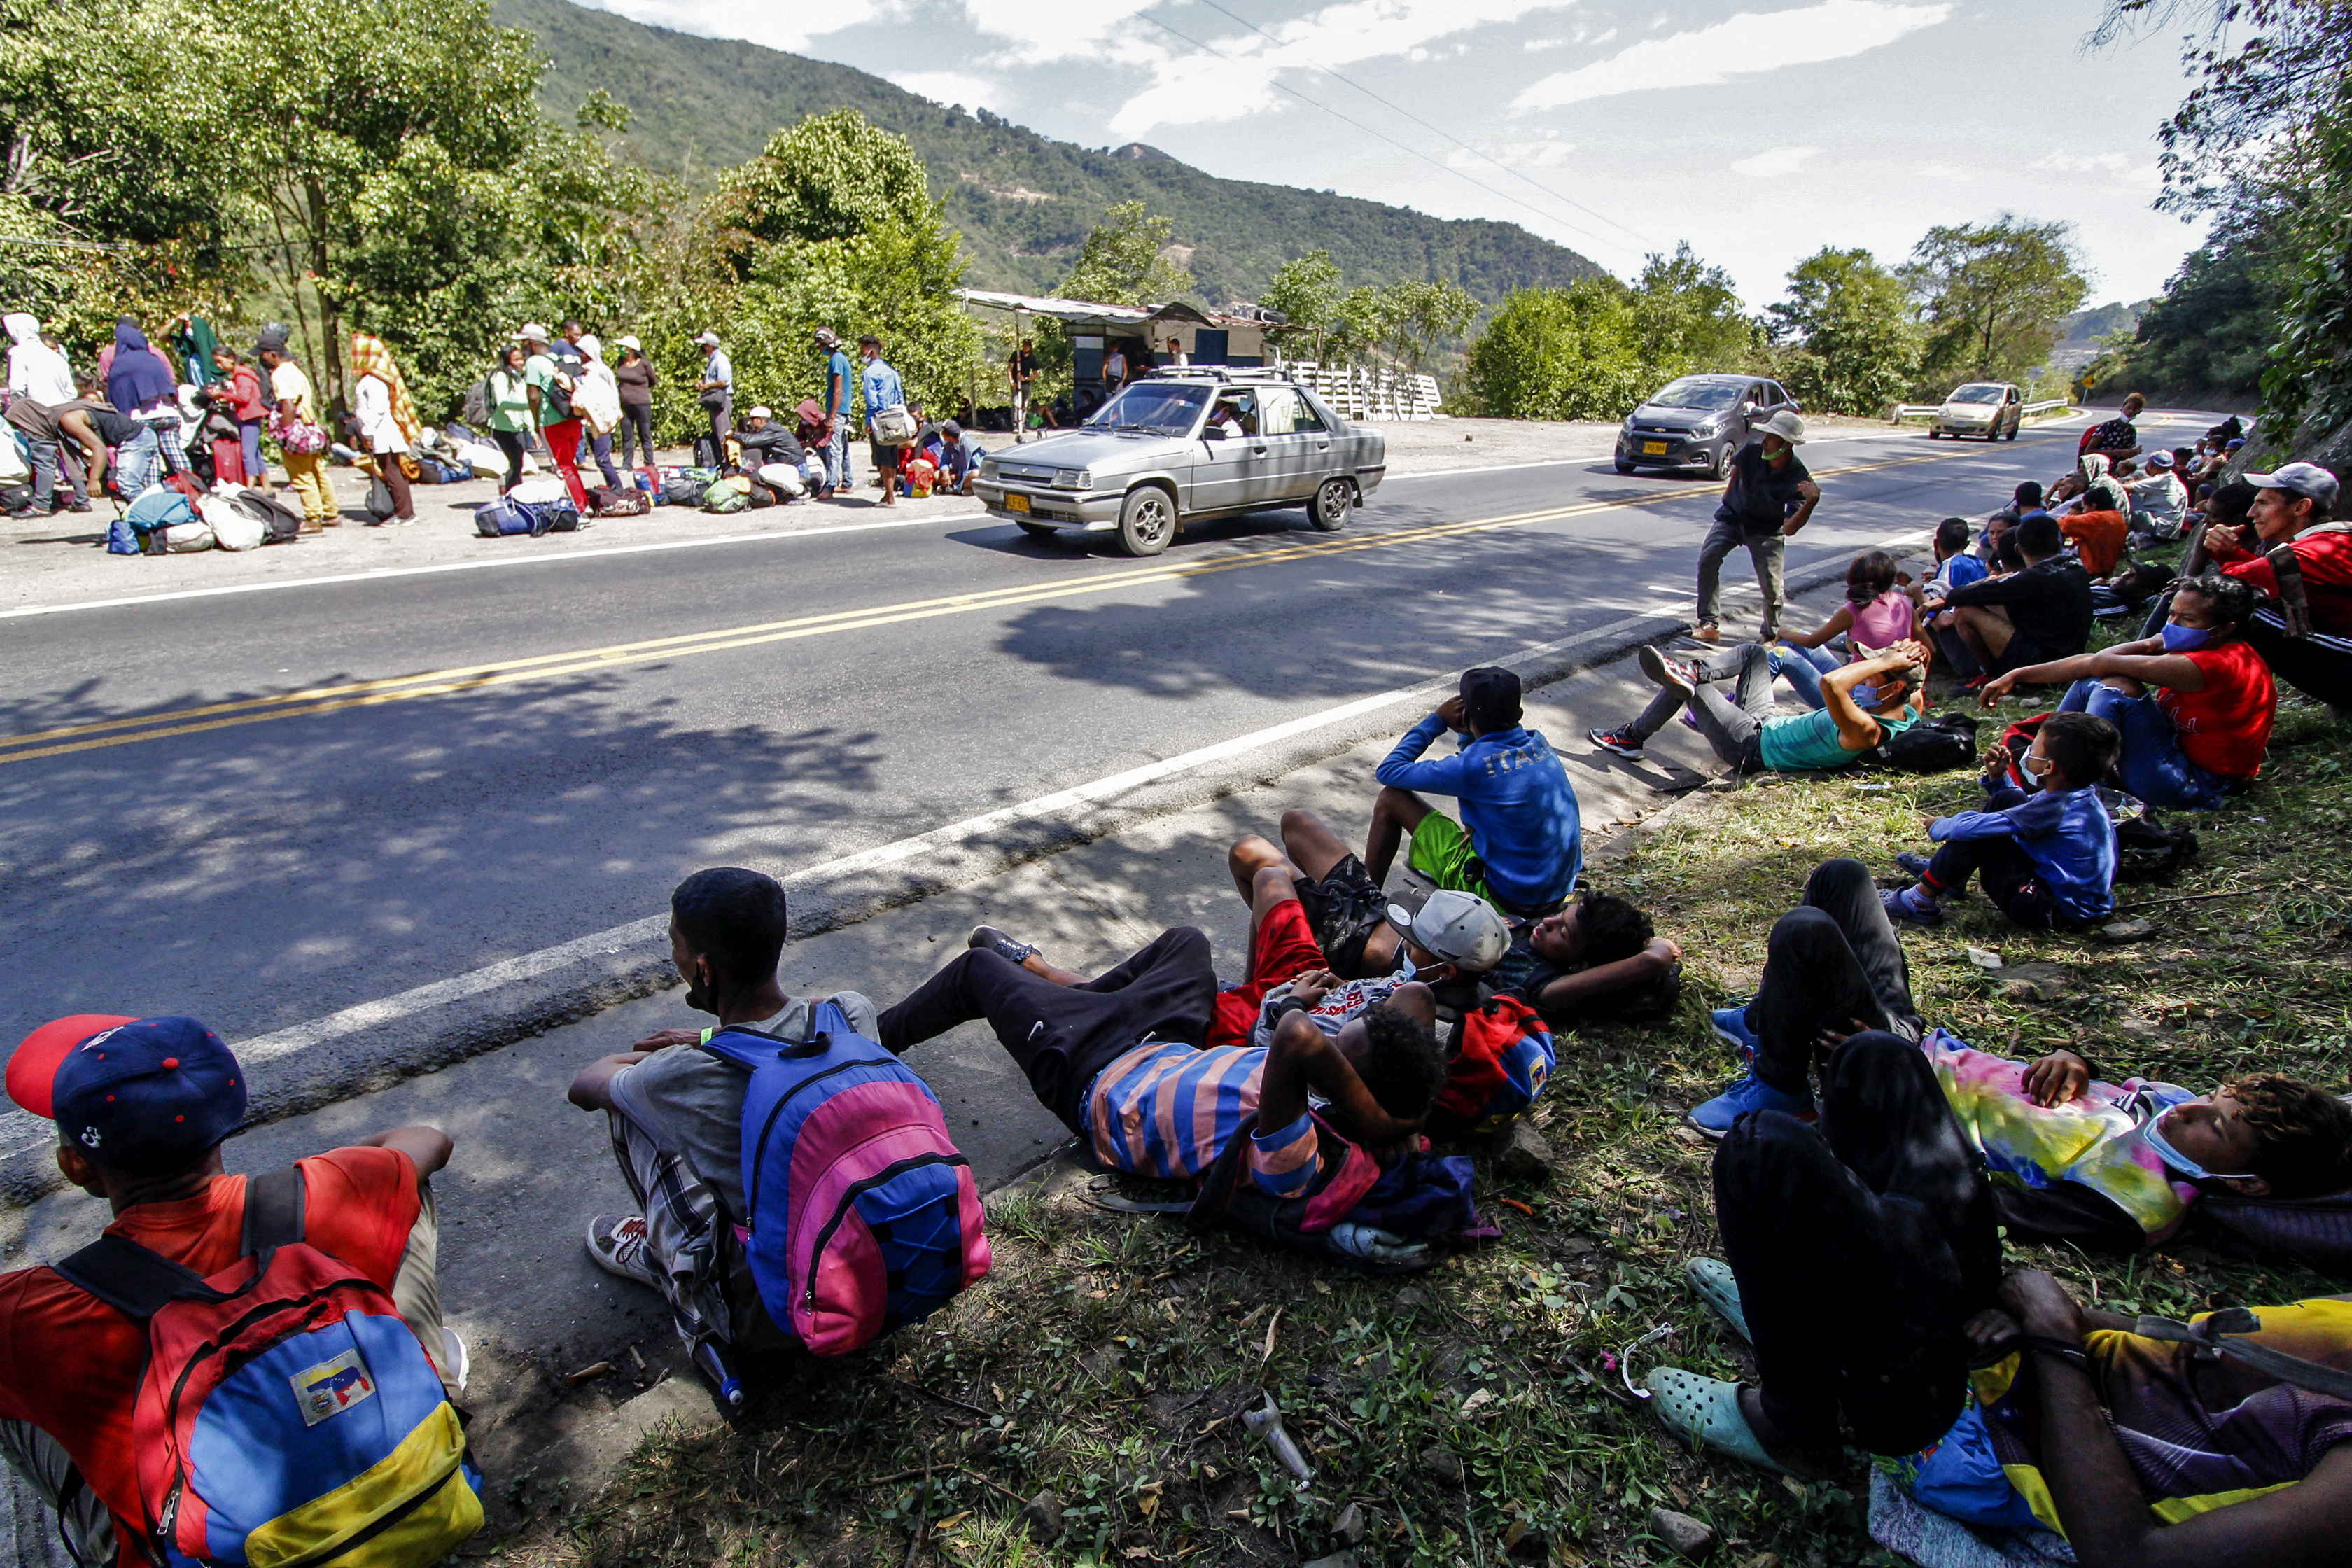 El “rechazo” hacia los migrantes venezolanos se apodera de América Latina